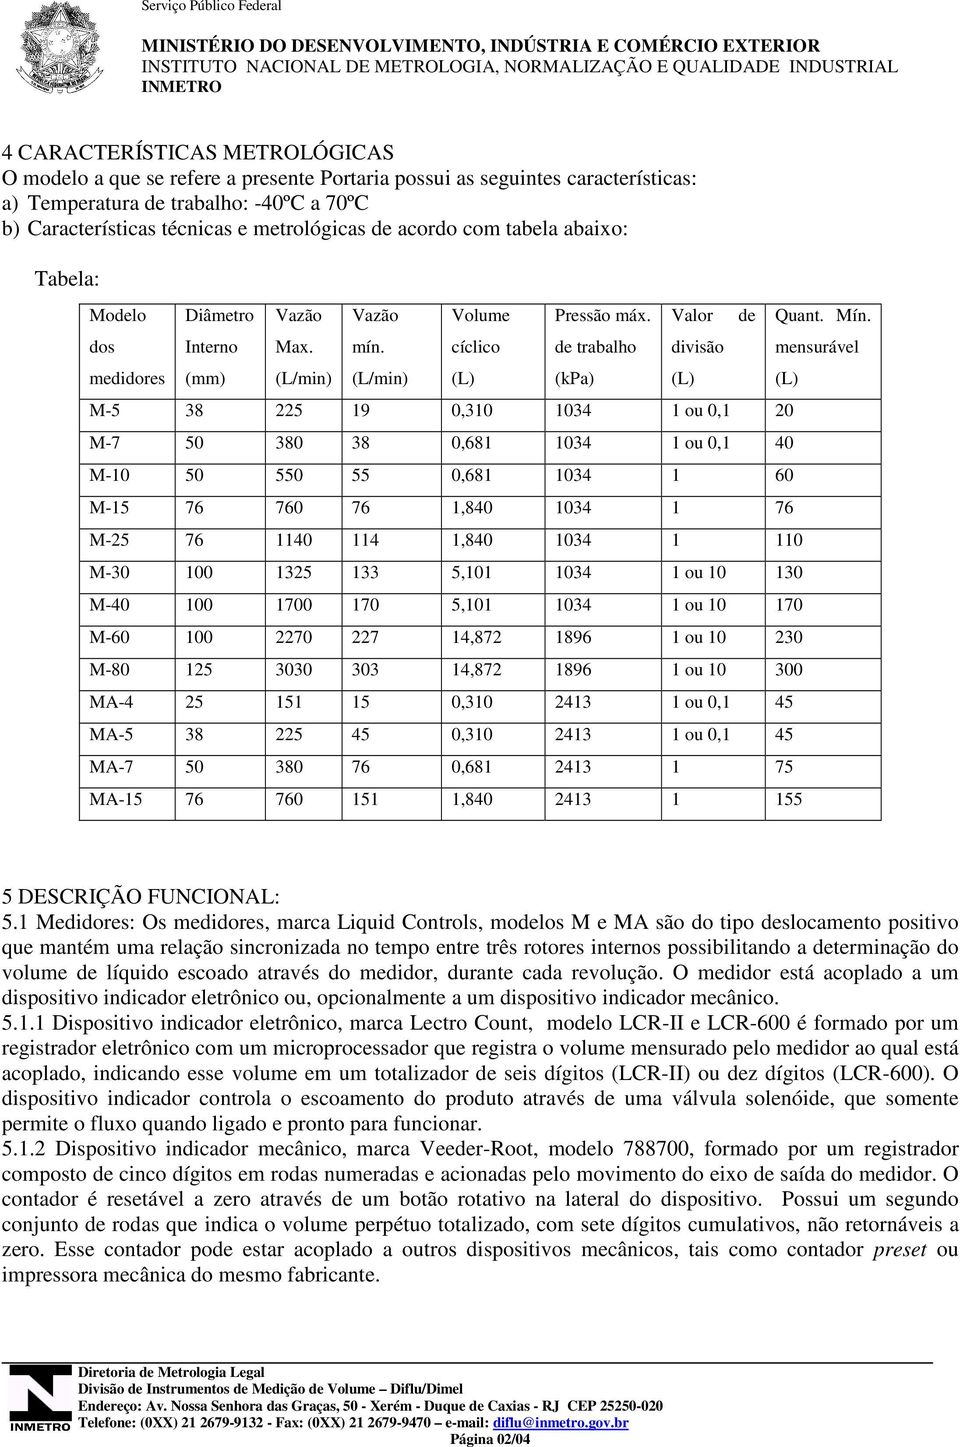 Tabela: Modelo dos medidores Diâmetro Interno (mm) Vazão Max. (L/min) Vazão mín. (L/min) Volume cíclico (L) Pressão máx.